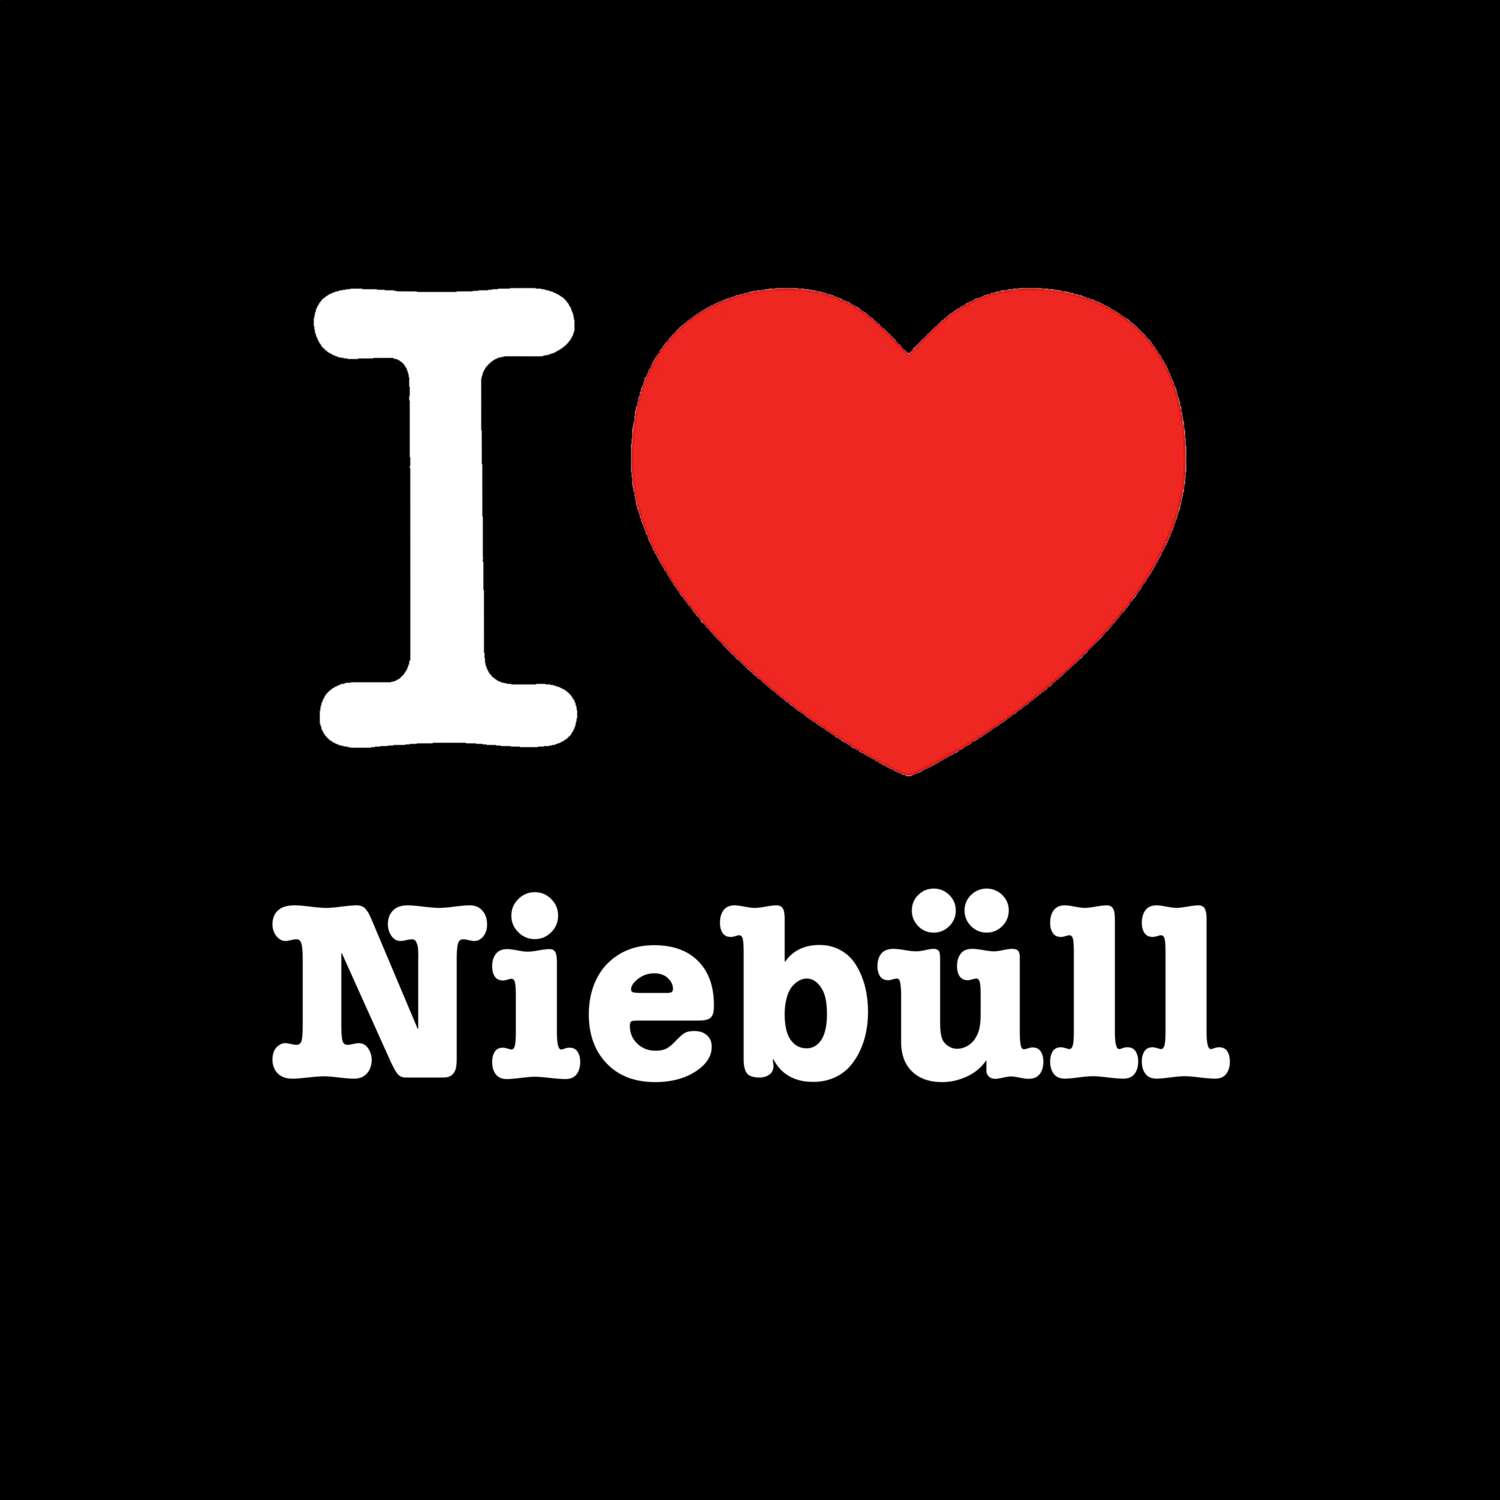 Niebüll T-Shirt »I love«